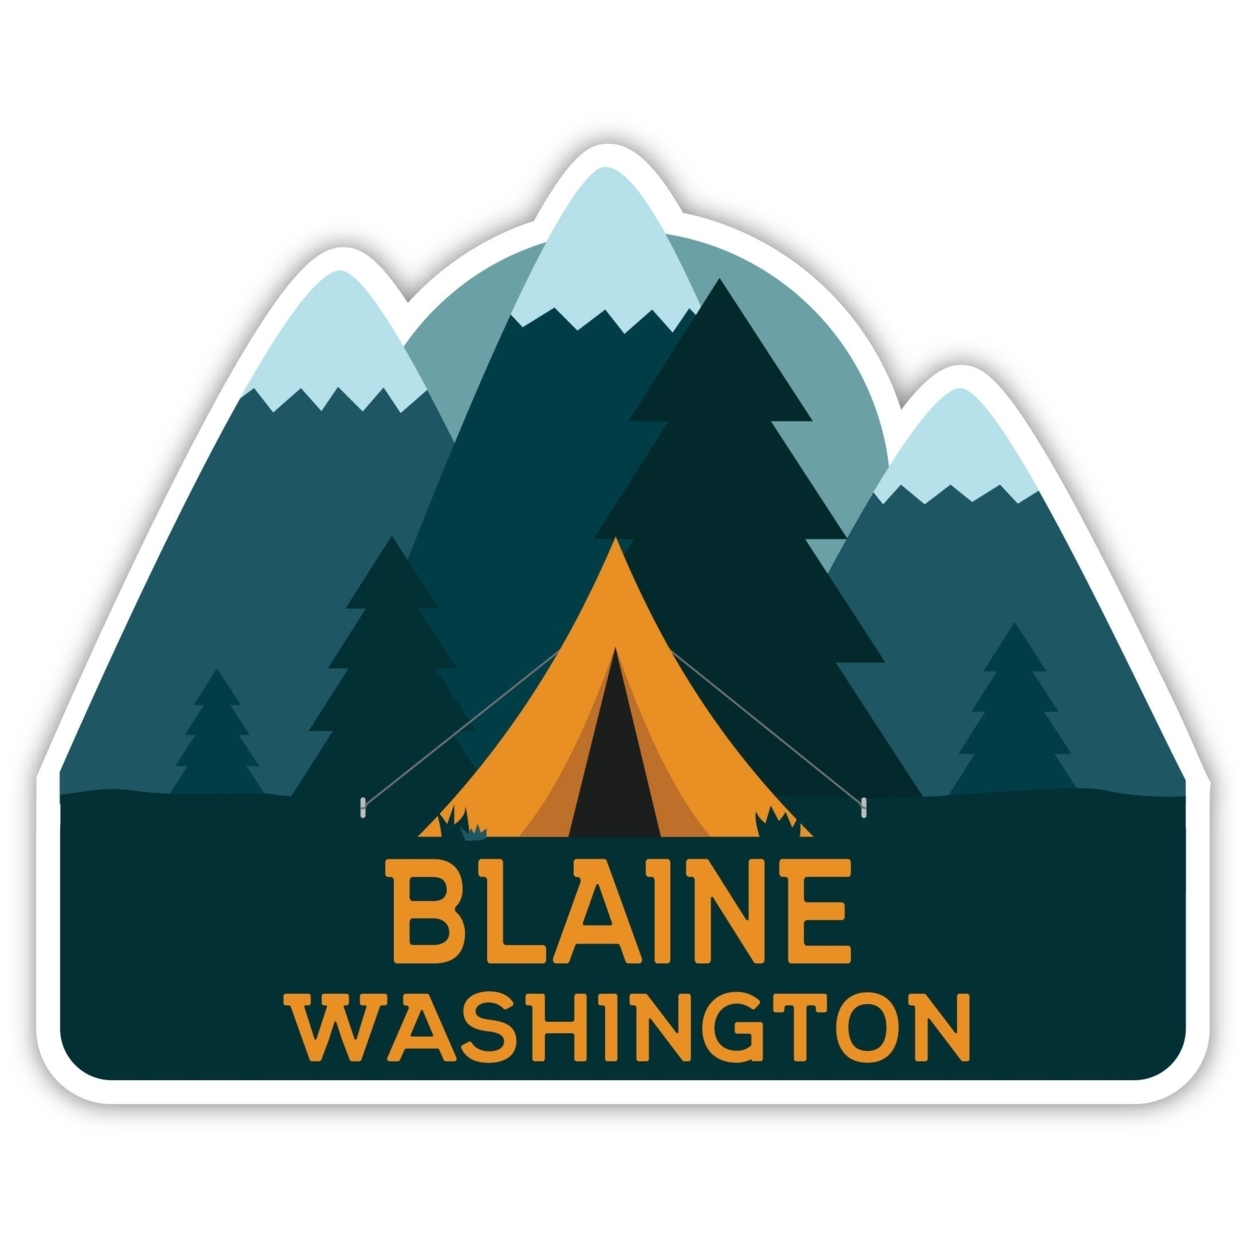 Blaine Washington Souvenir Decorative Stickers (Choose Theme And Size) - 4-Pack, 2-Inch, Tent